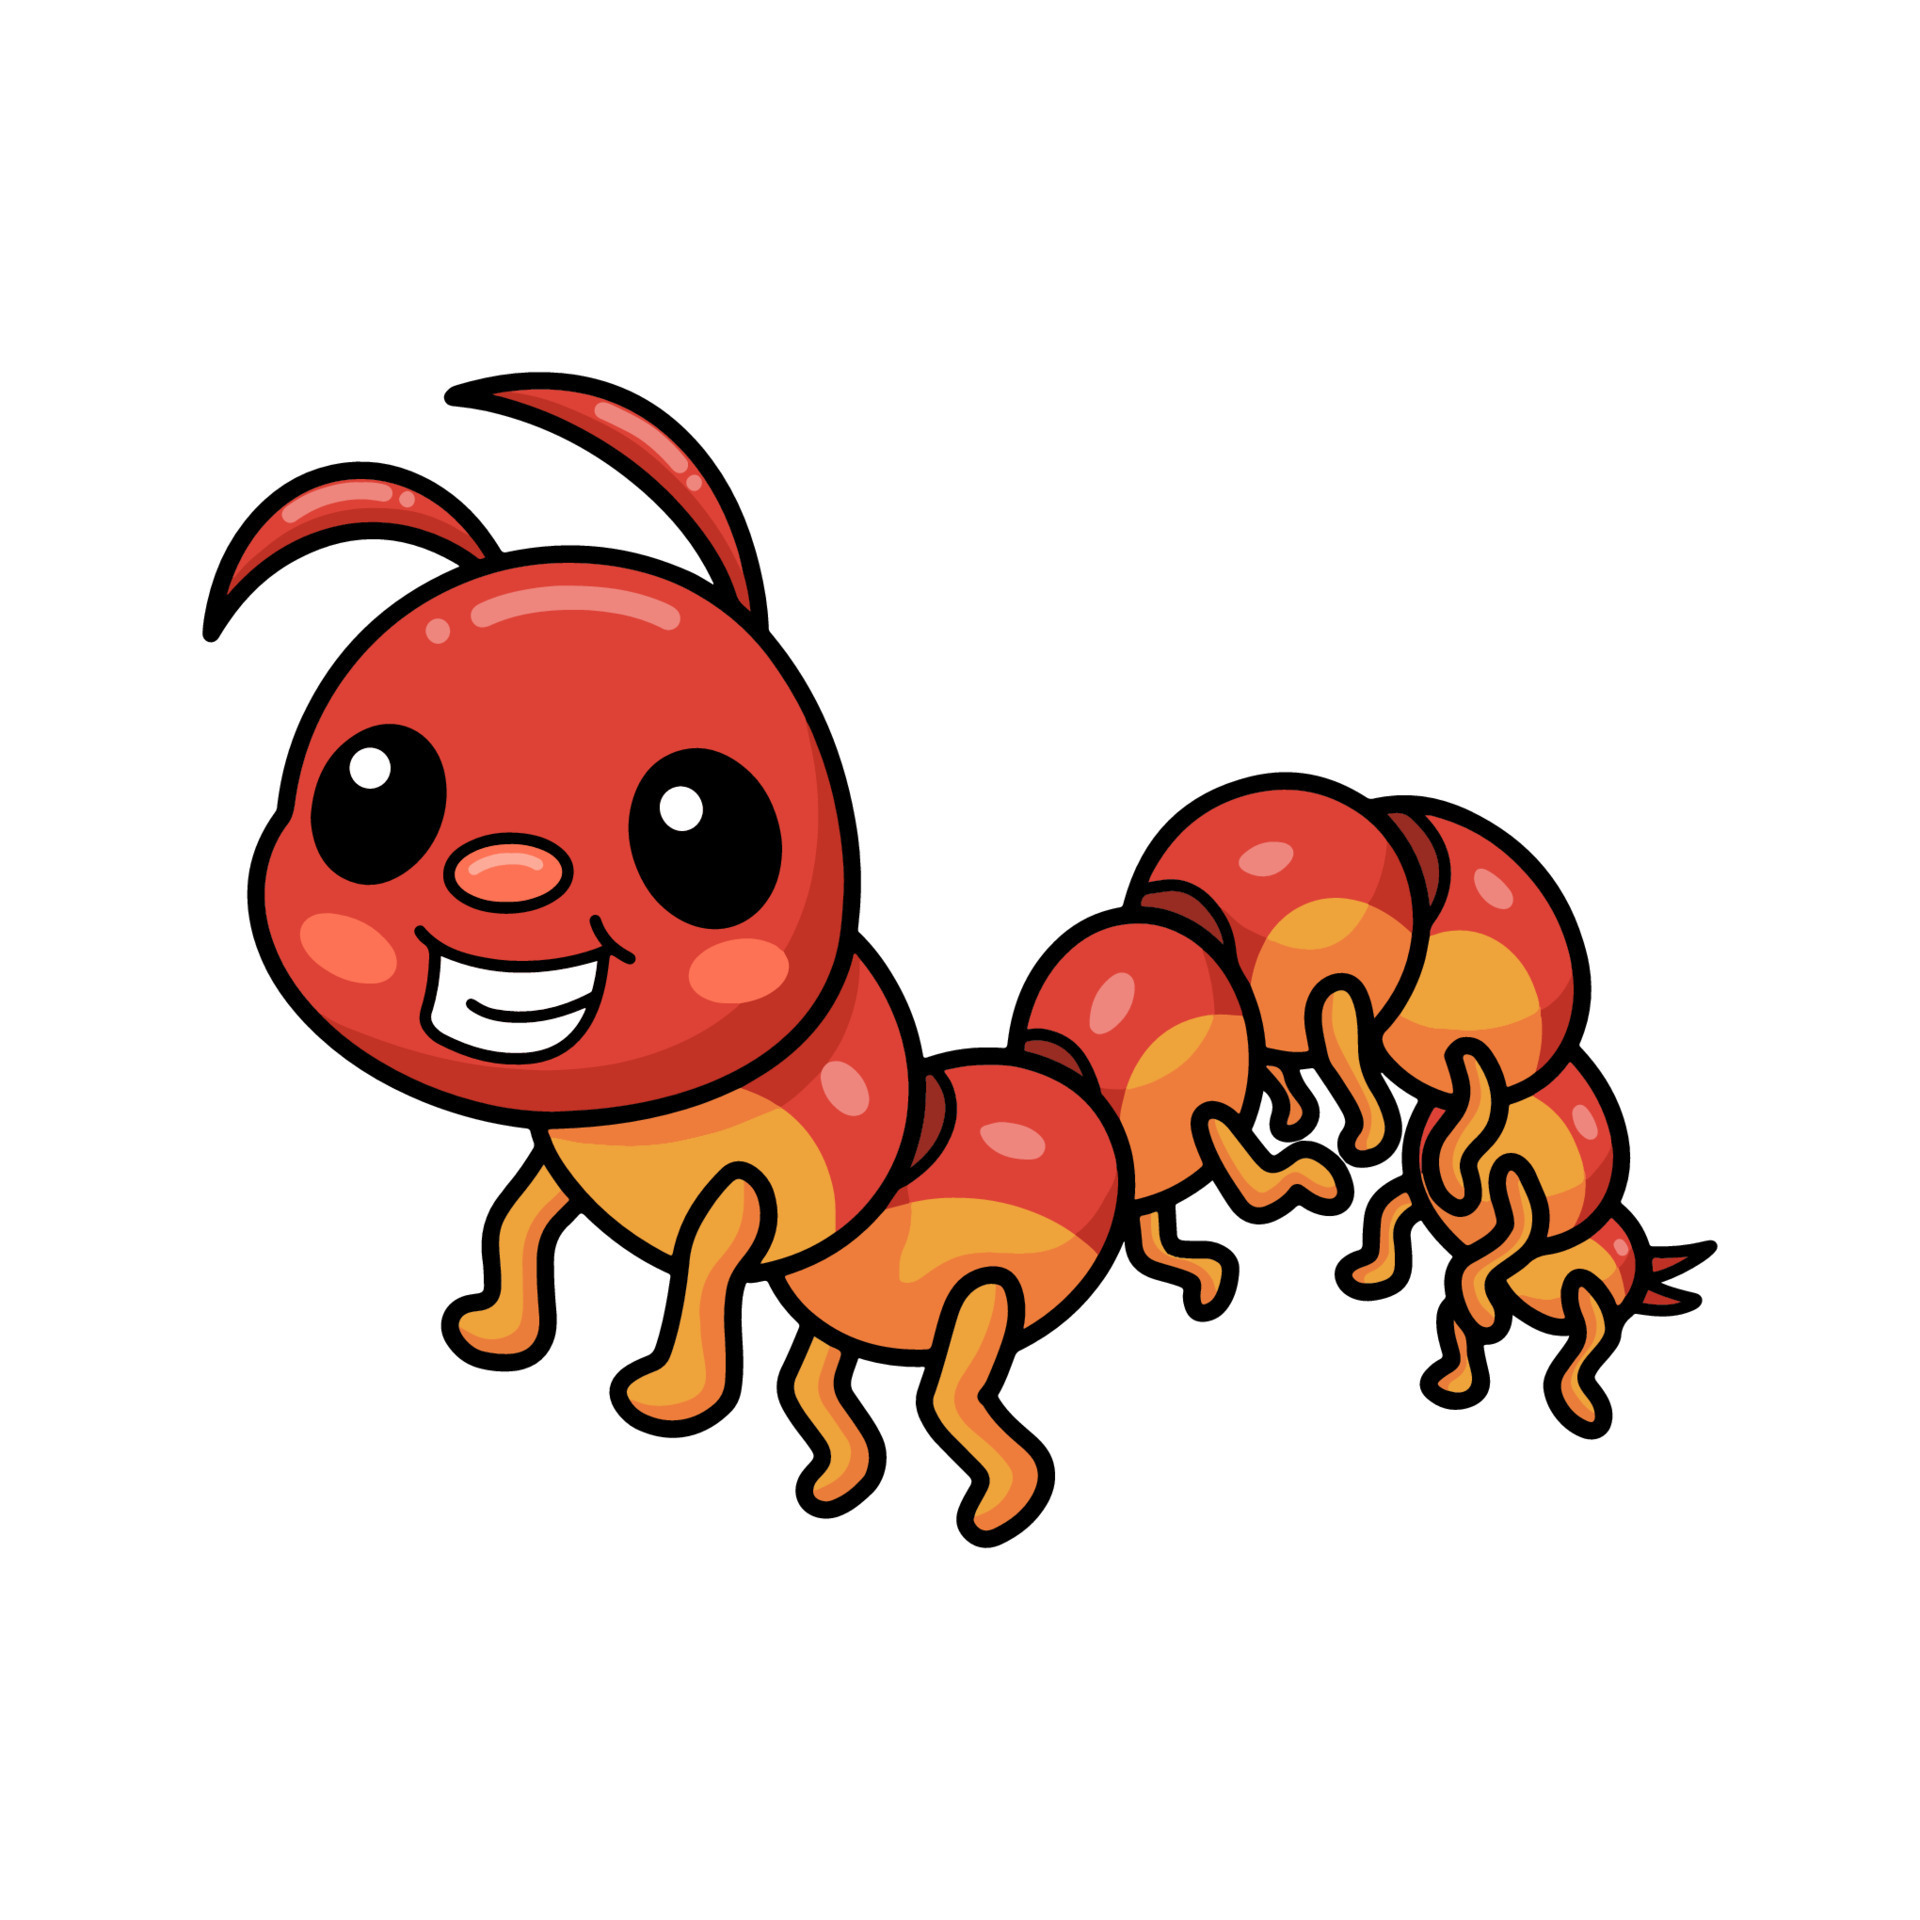 Cute little centipede cartoon character 12750645 Vector Art at Vecteezy